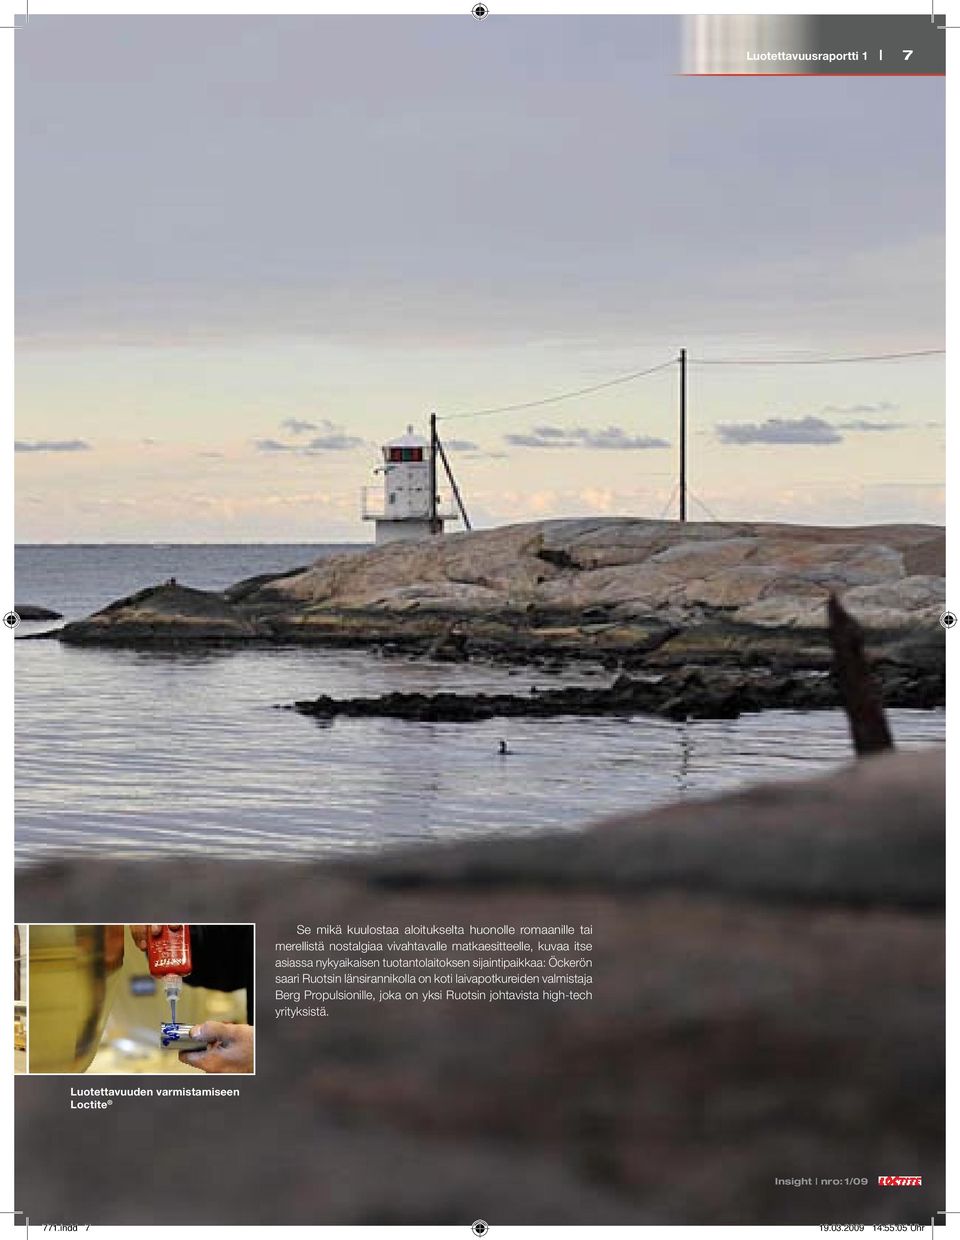 sijaintipaikkaa: Öckerön saari Ruotsin länsirannikolla on koti laivapotkureiden valmistaja Berg Propulsionille,